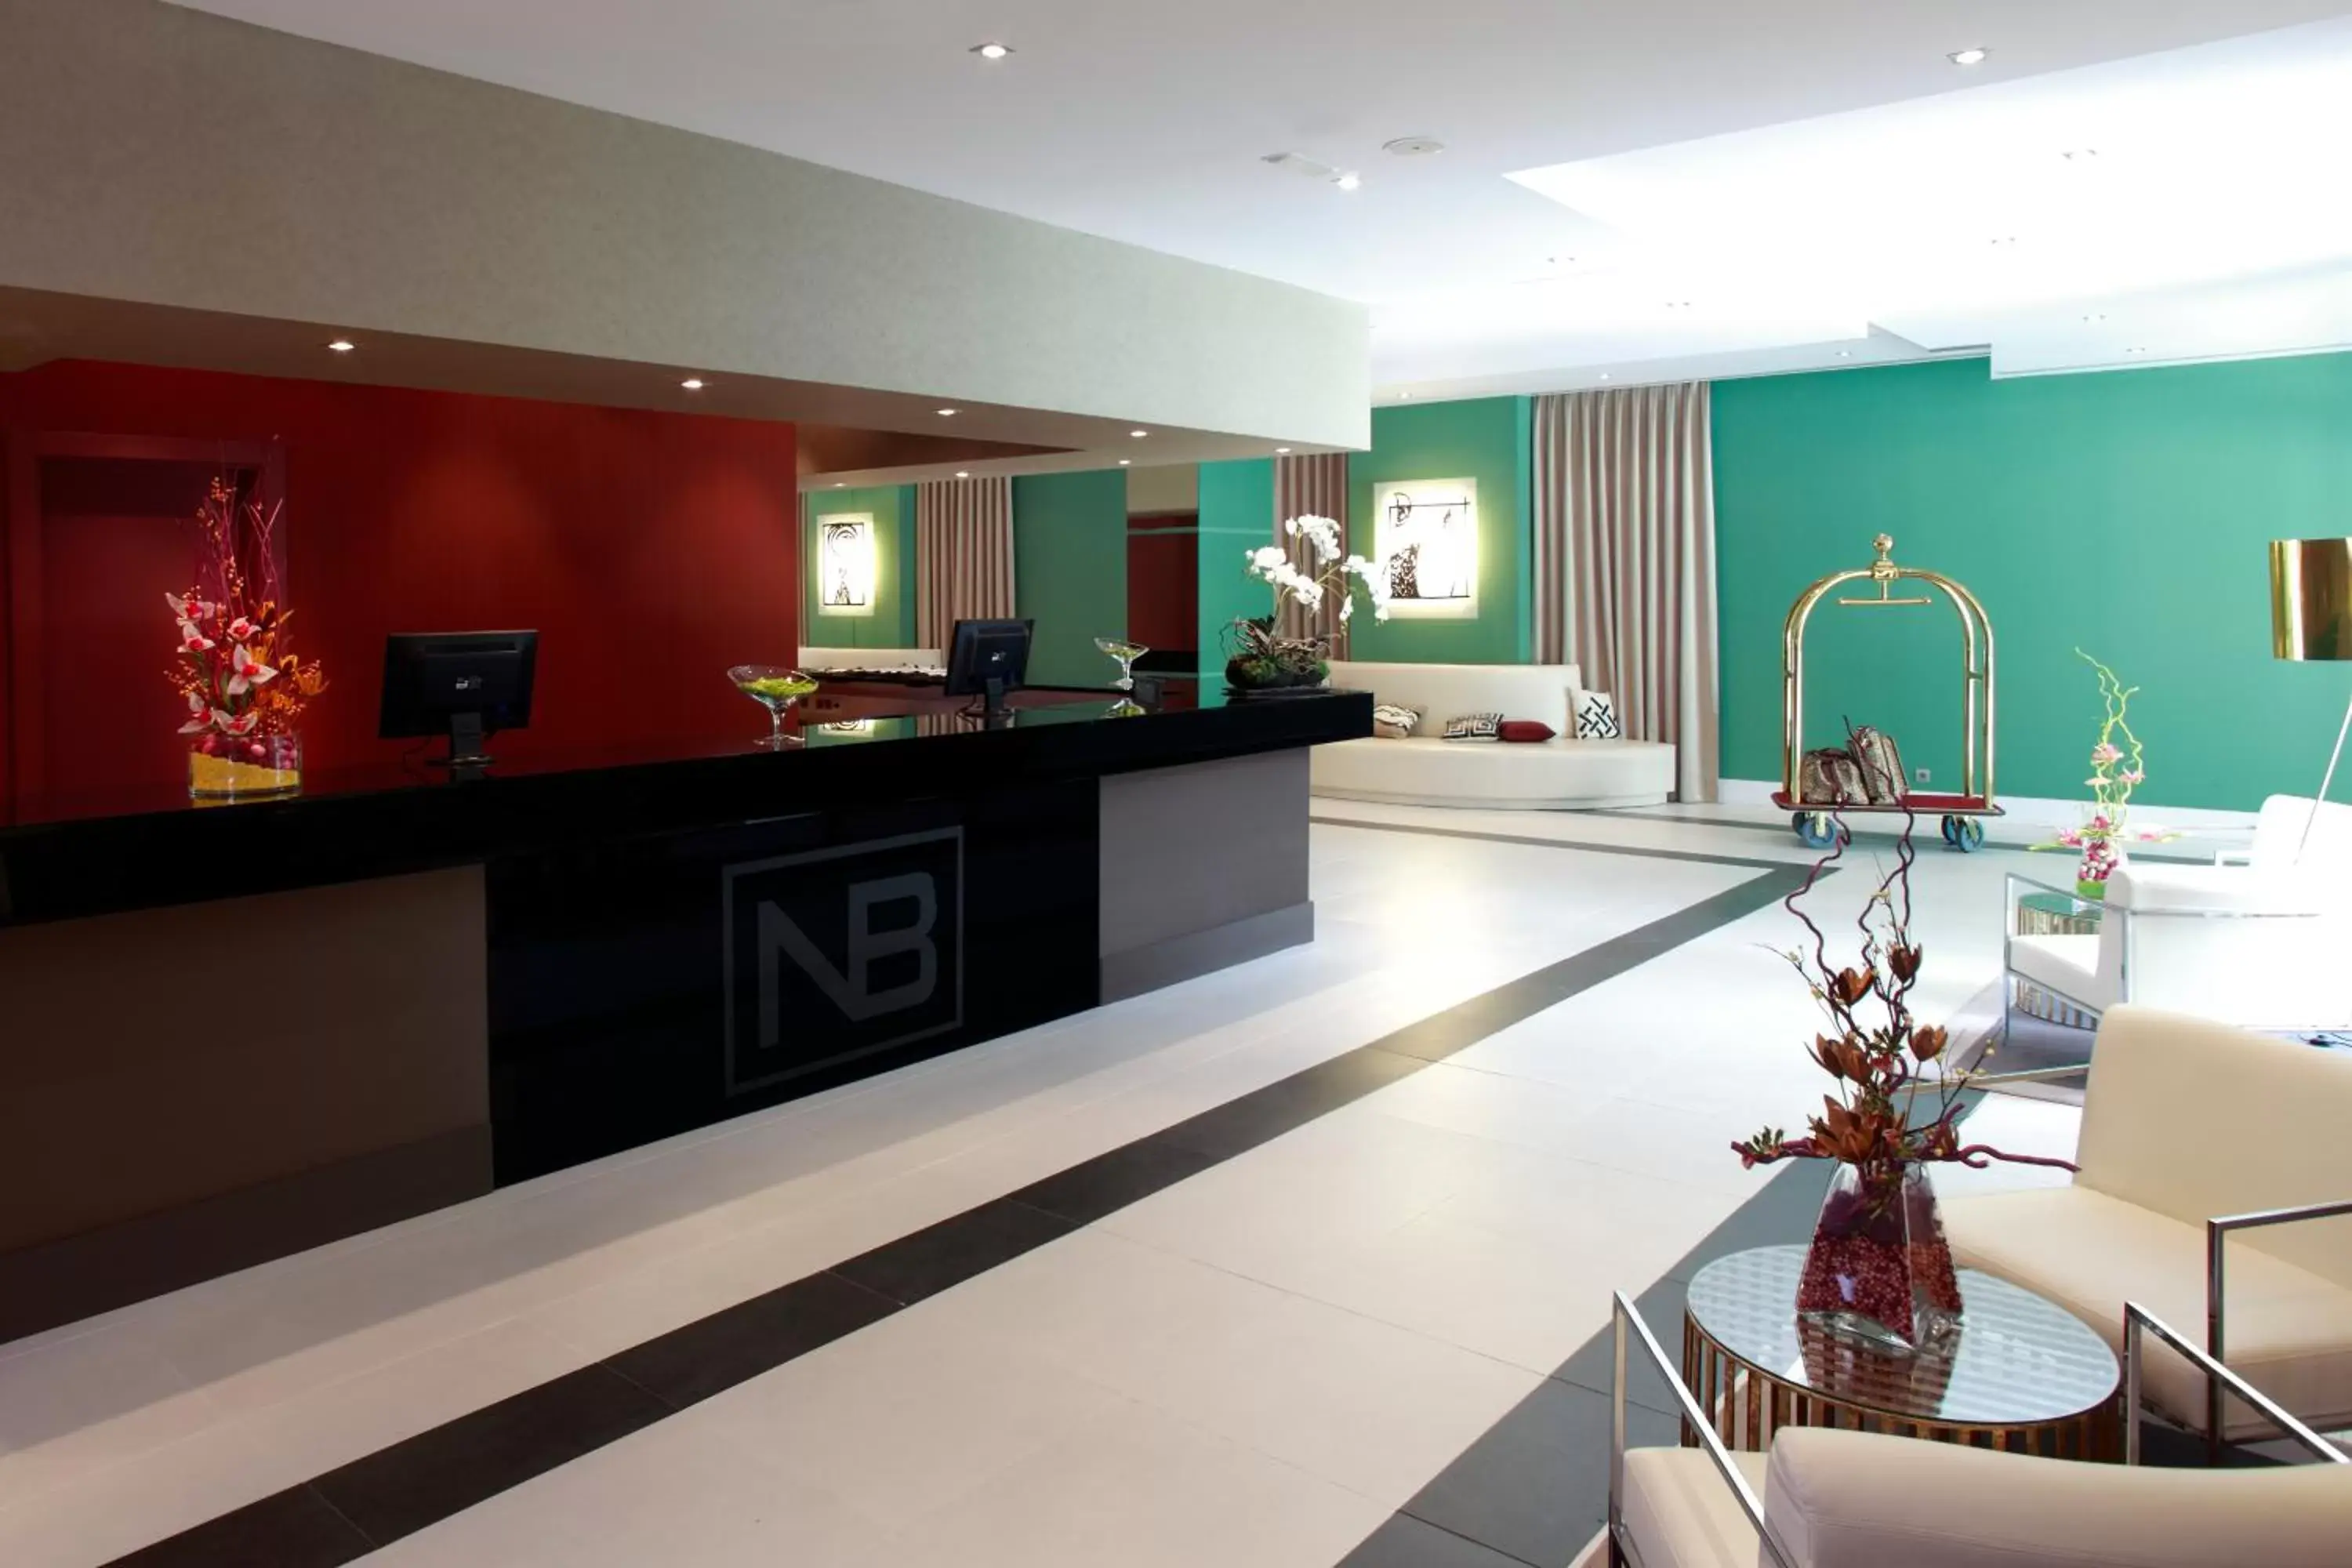 Lobby or reception, Lobby/Reception in Hotel Nuevo Boston